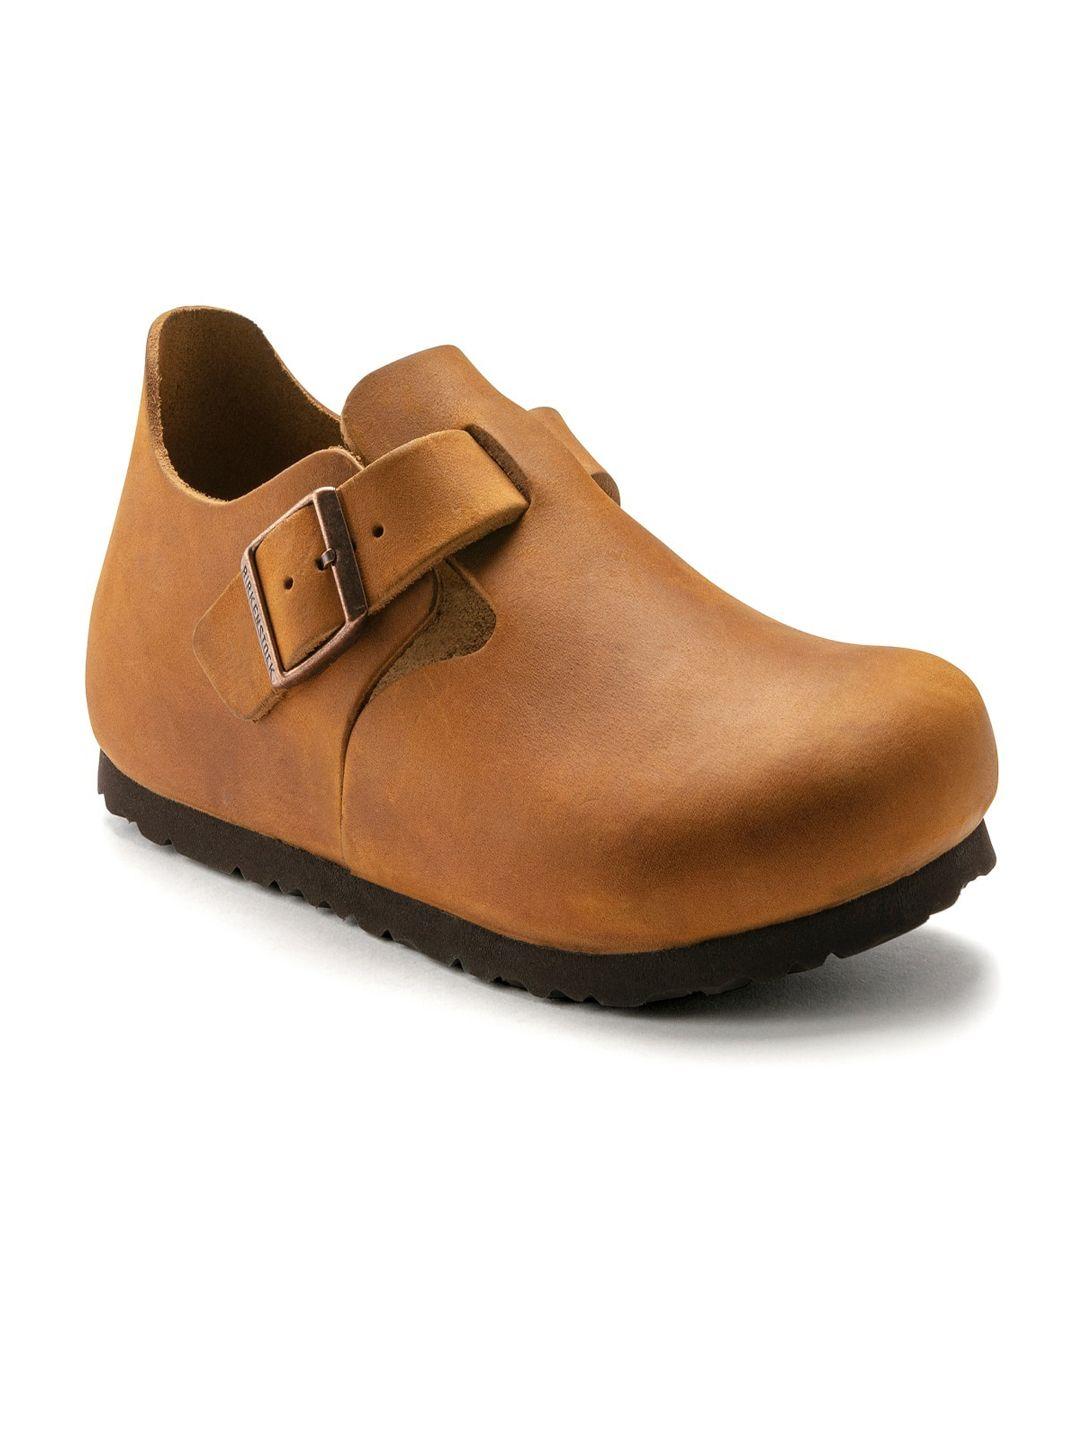 birkenstock unisex brown solid london regular width sneakers with buckle